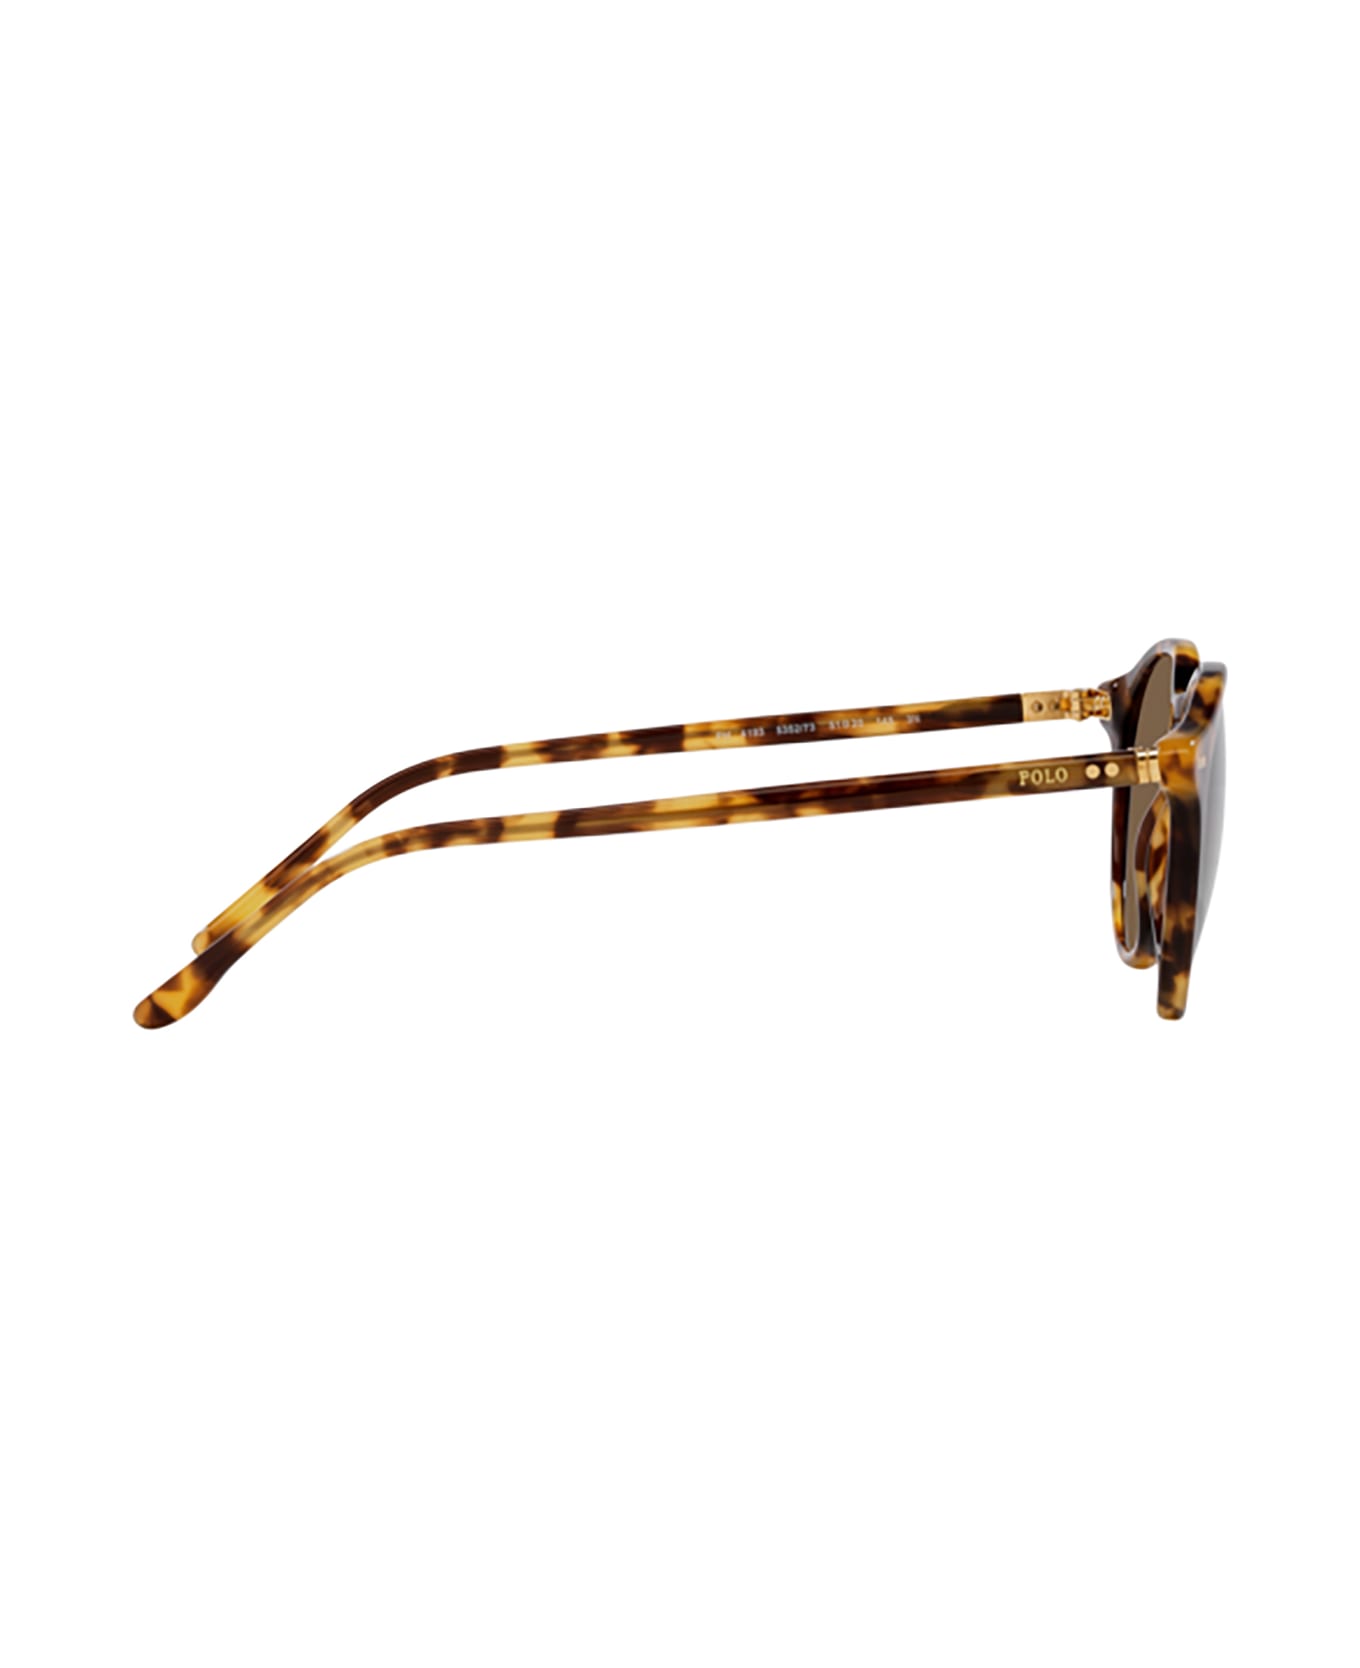 Polo Ralph Lauren Ph4193 Shiny Spotty Havana Sunglasses - Shiny spotty havana